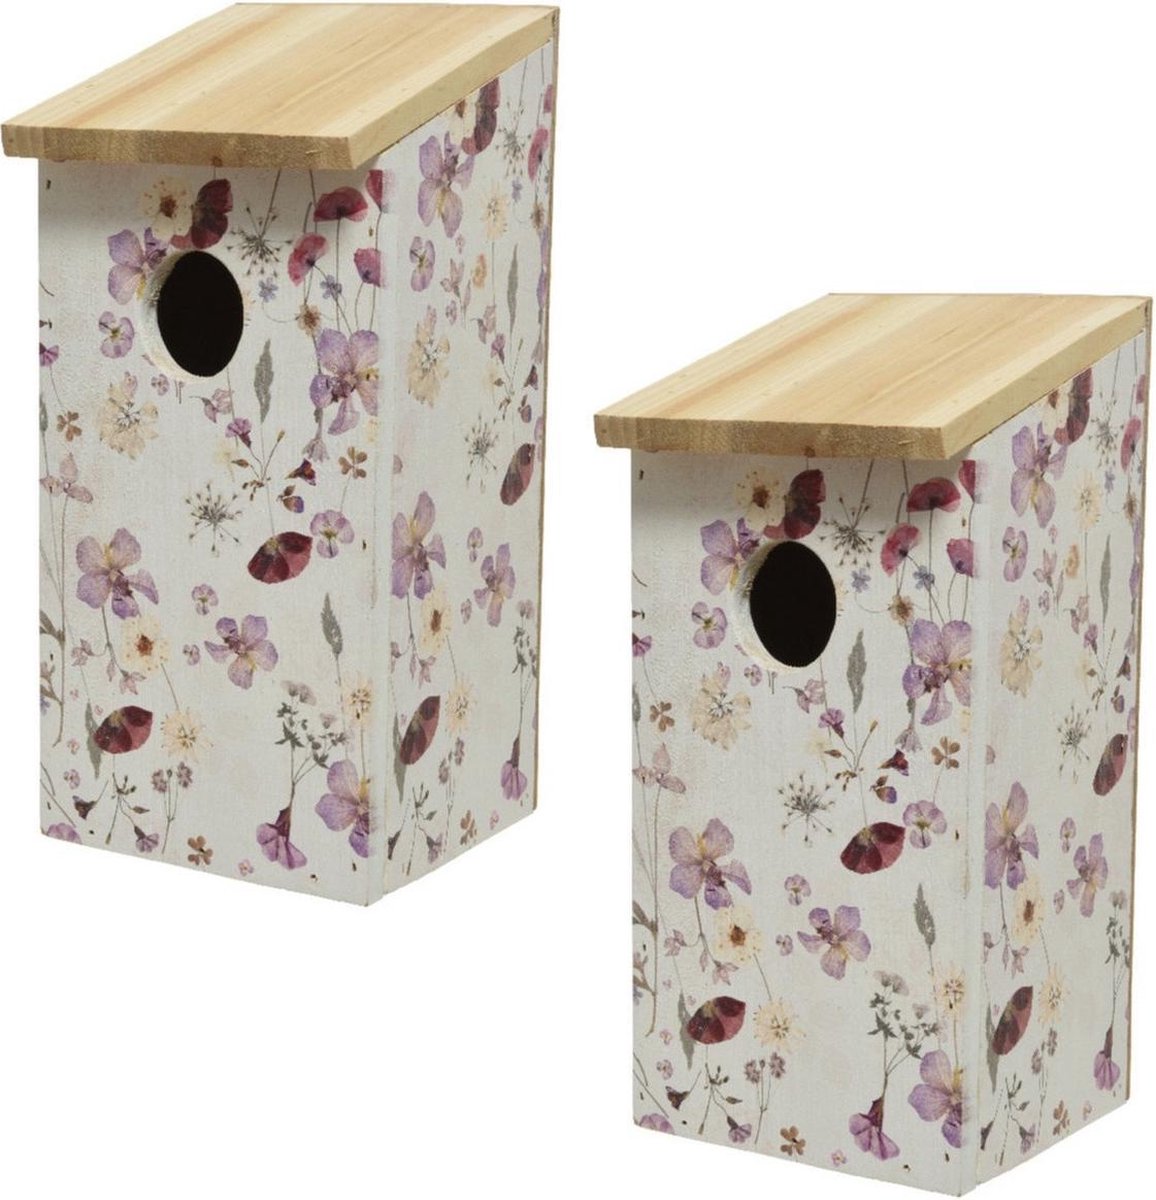 2x stuks vurenhouten vogelhuisjes/nestkastjes met bloemen print 12 x 13,5 x 26 cm - Vogelhuisjes tuindecoraties